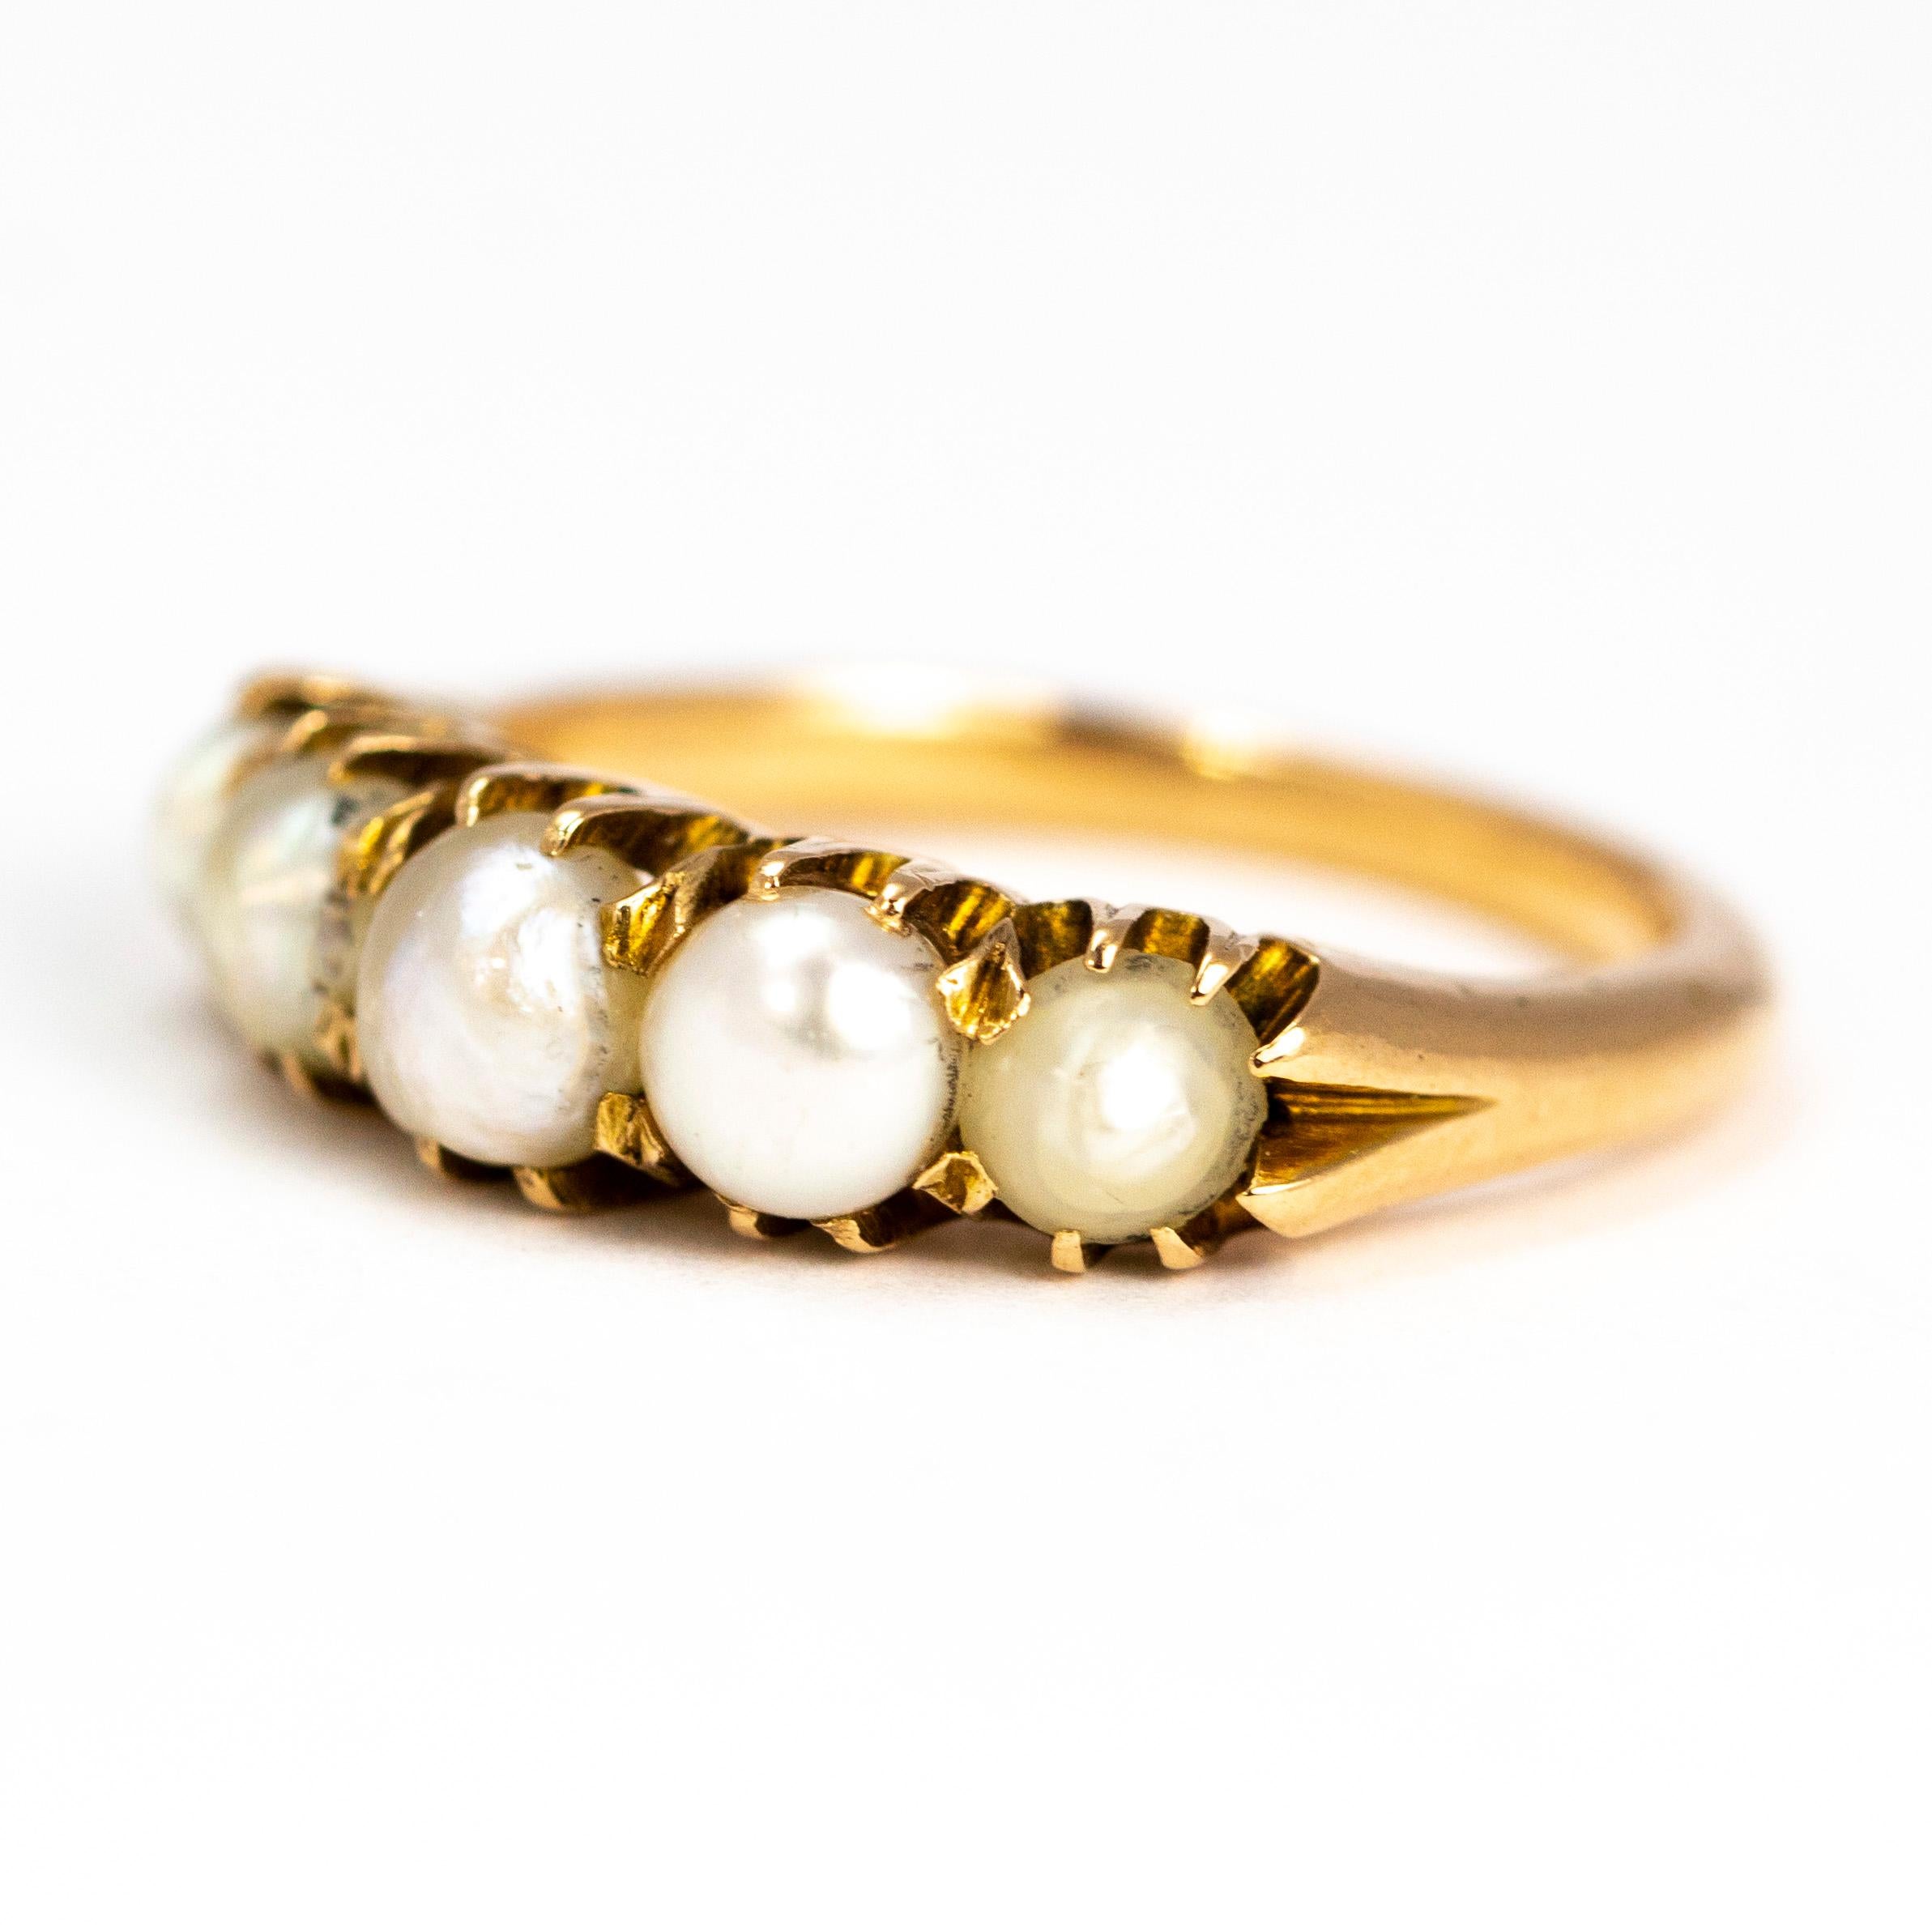 Dieser Perlenring mit fünf Steinen wirkt klobig und ist aus glänzendem 9-Karat-Gold gefertigt. Die Perlen befinden sich in einfachen Krallen.

Ring Größe: L 1/2 oder 6 
Bandbreite: 5mm

Gewicht: 4,7 g